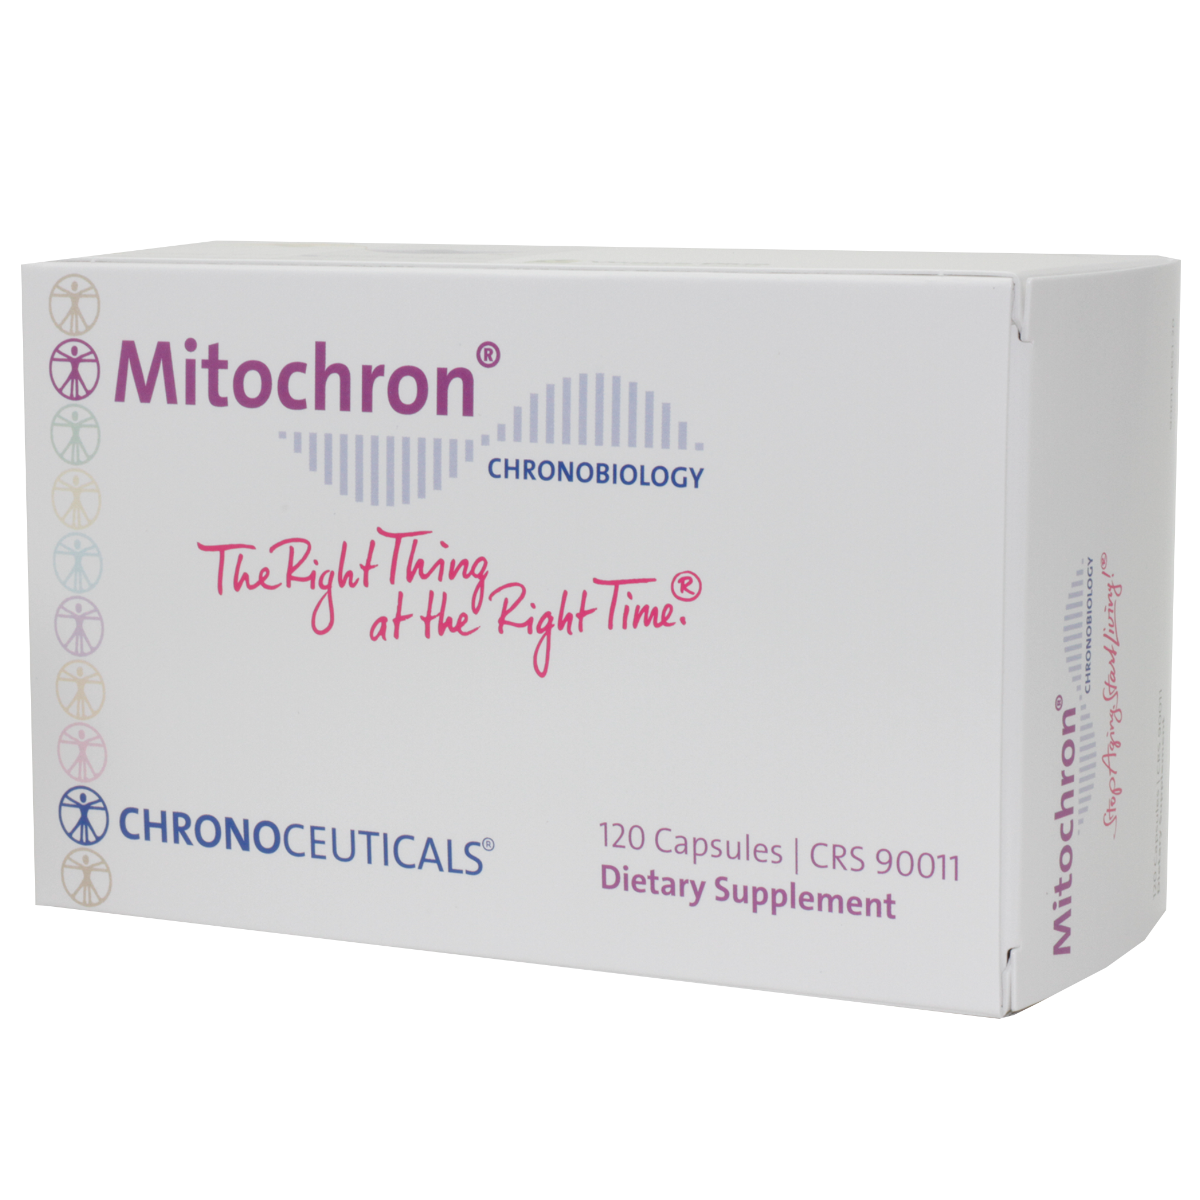 Mitochron®